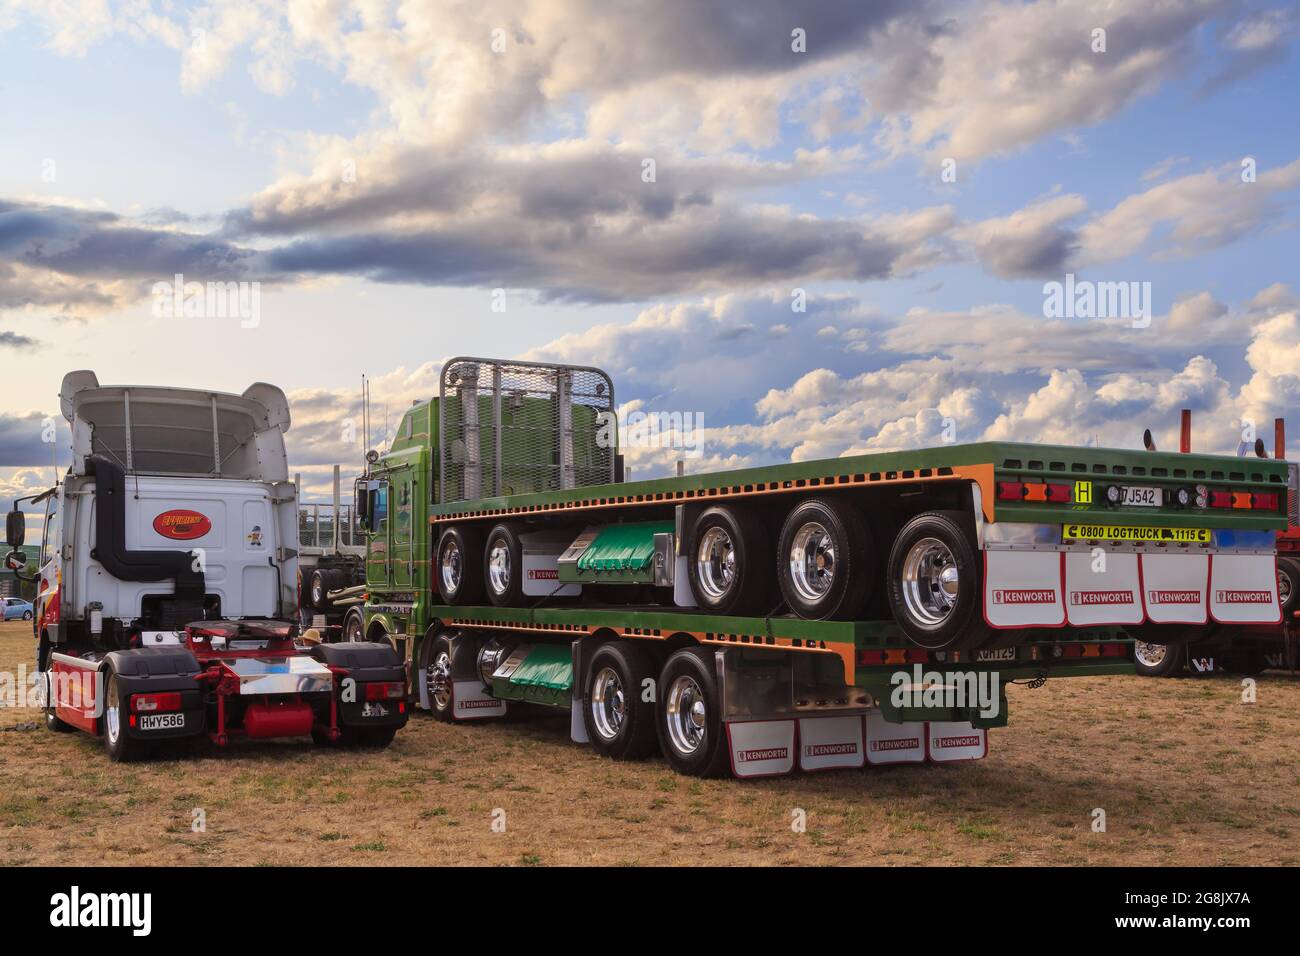 Vue arrière de deux gros camions d'engins de forage lors d'une exposition de camions Banque D'Images